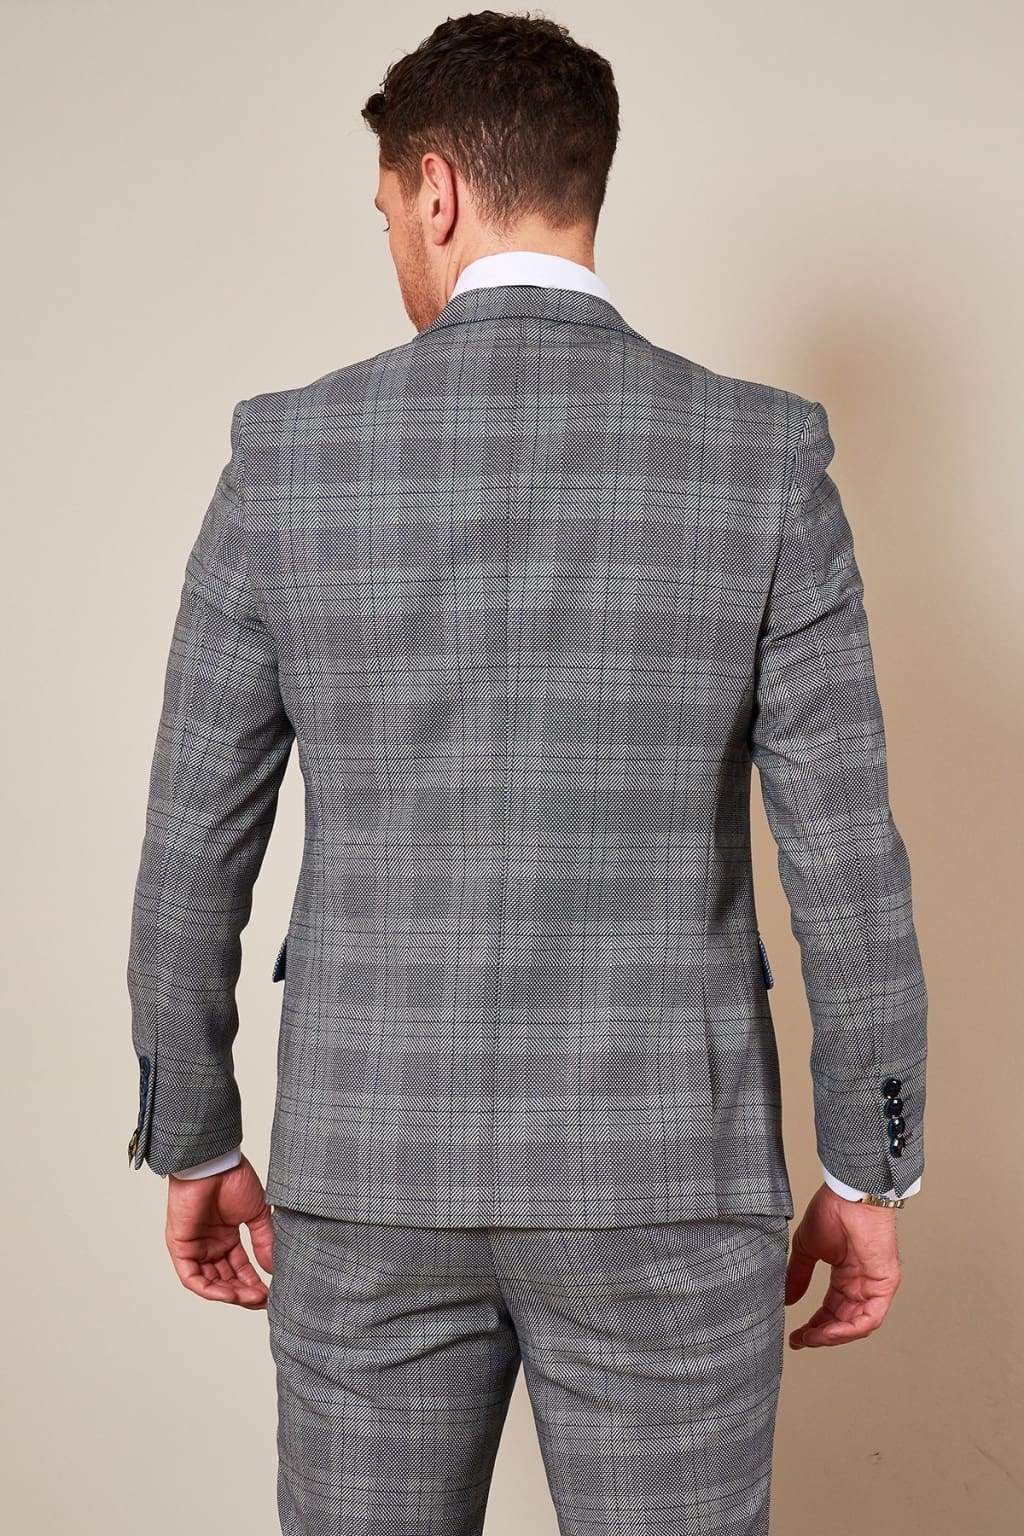 Marc Darcy Jerry Grey Blazer Jacket - UNIT7 Menswear